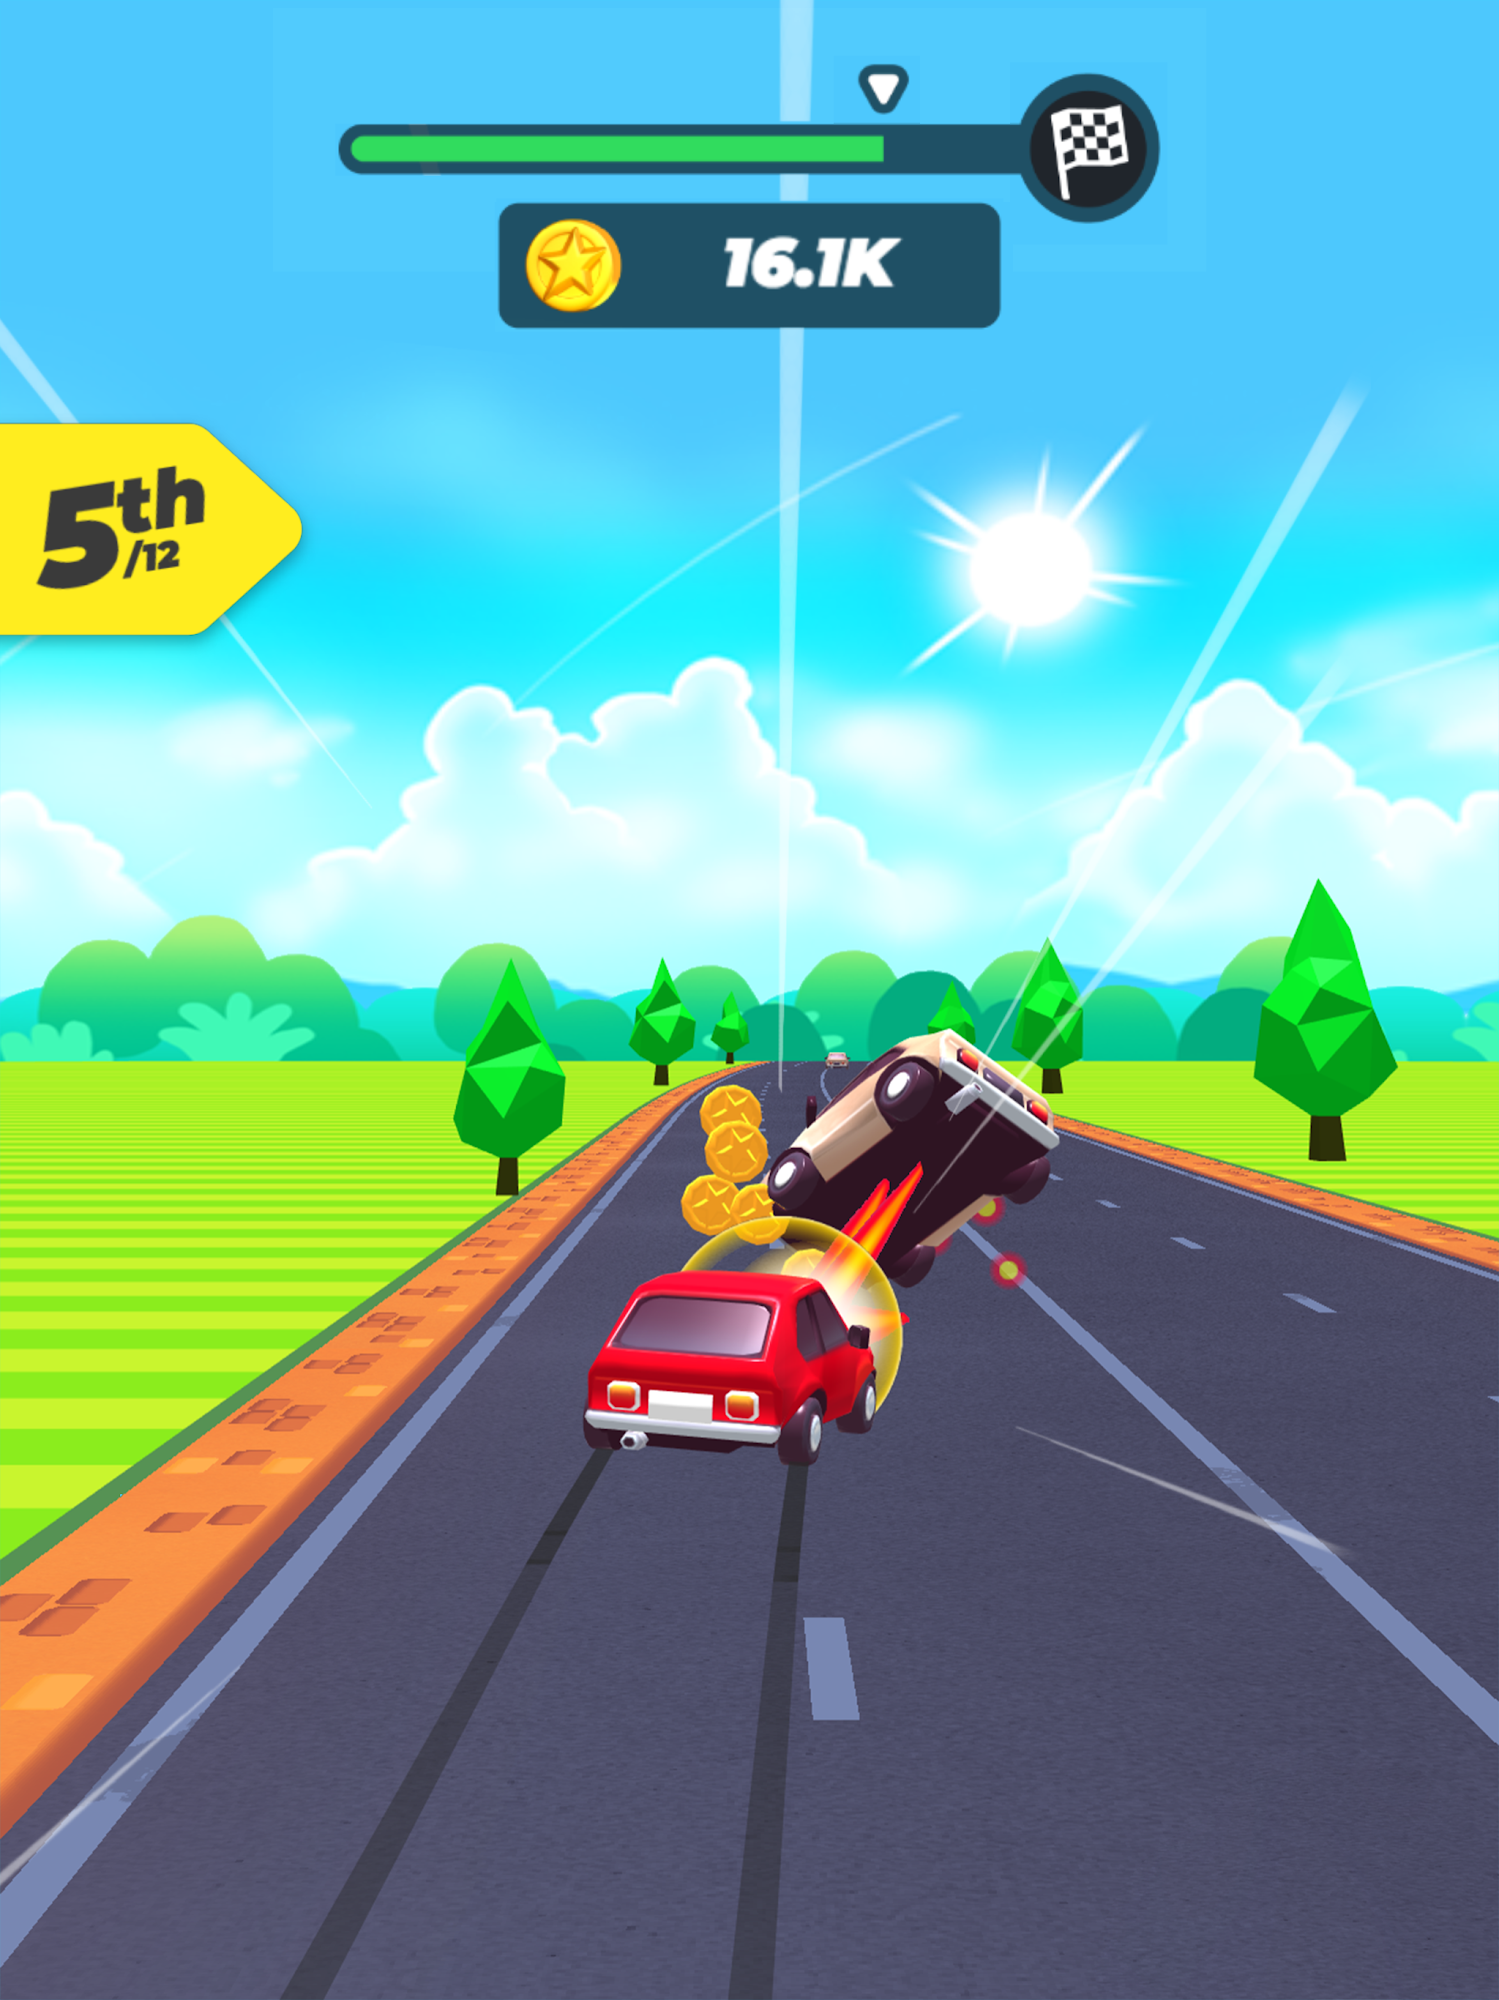 Road Crash screenshot 1